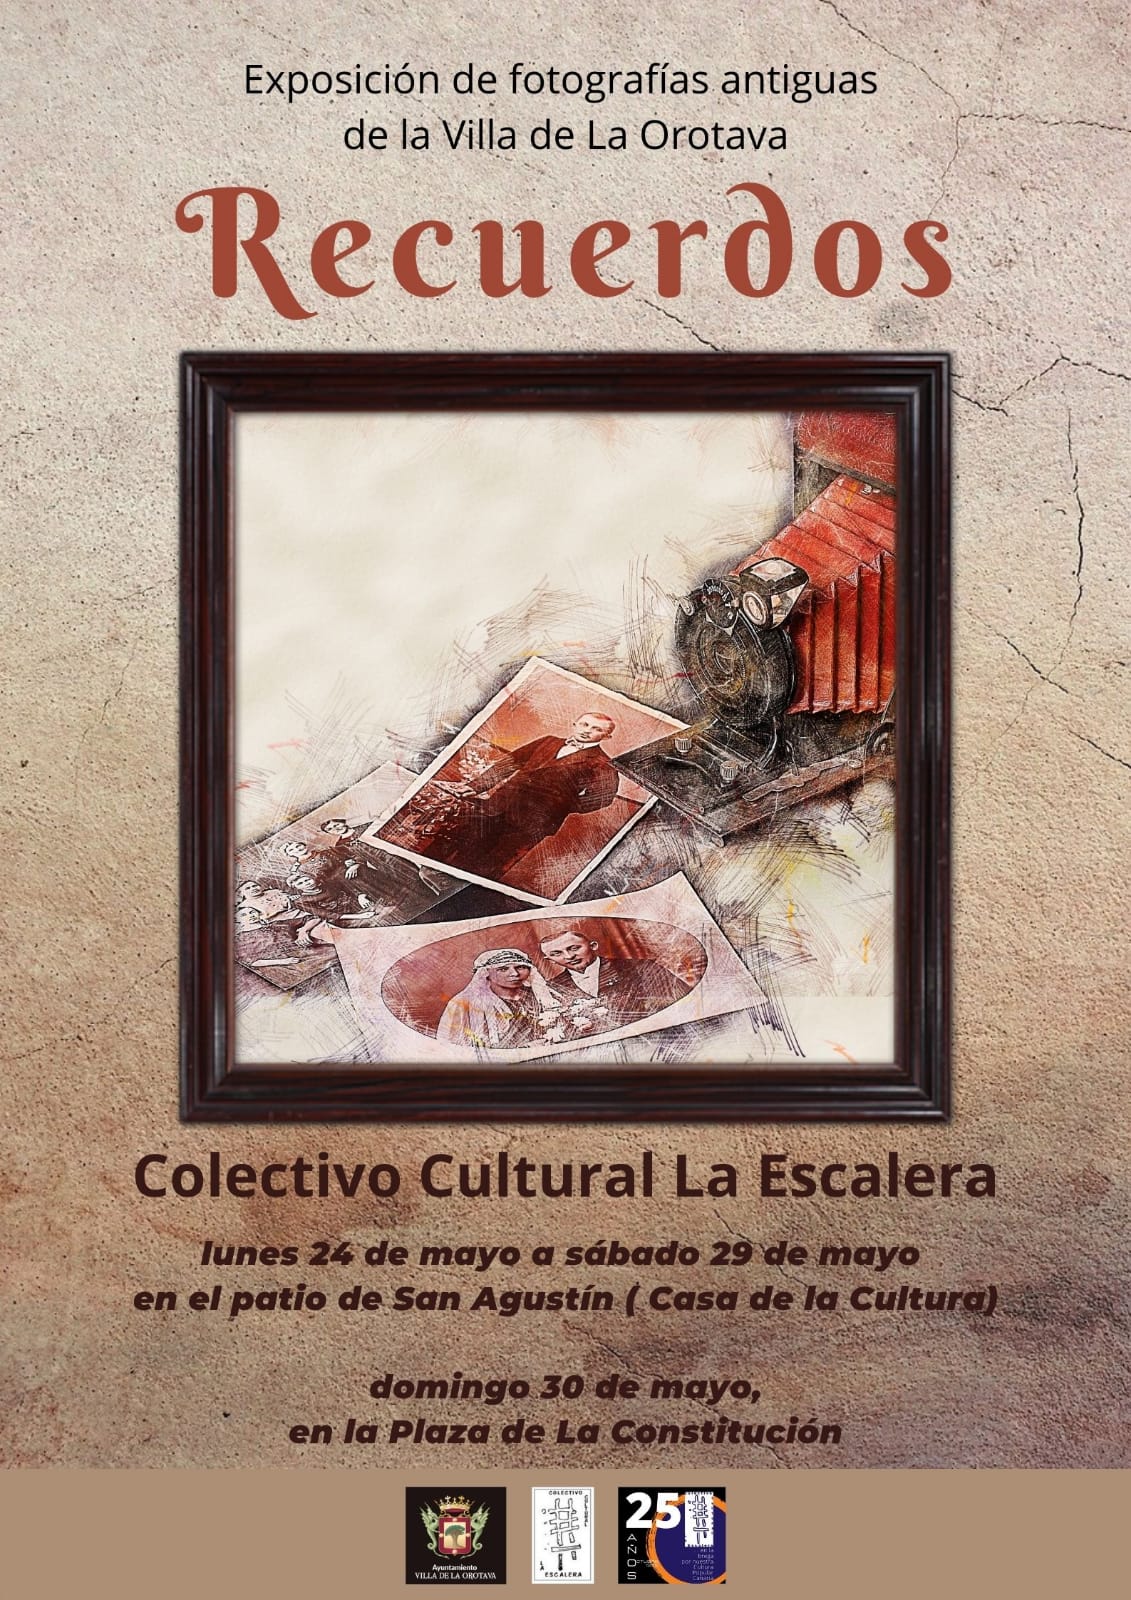 El Colectivo Cultural La Escalera organiza esta muestra desde el próximo lunes 24 hasta el 29 de mayo, en el Patio San Agustín